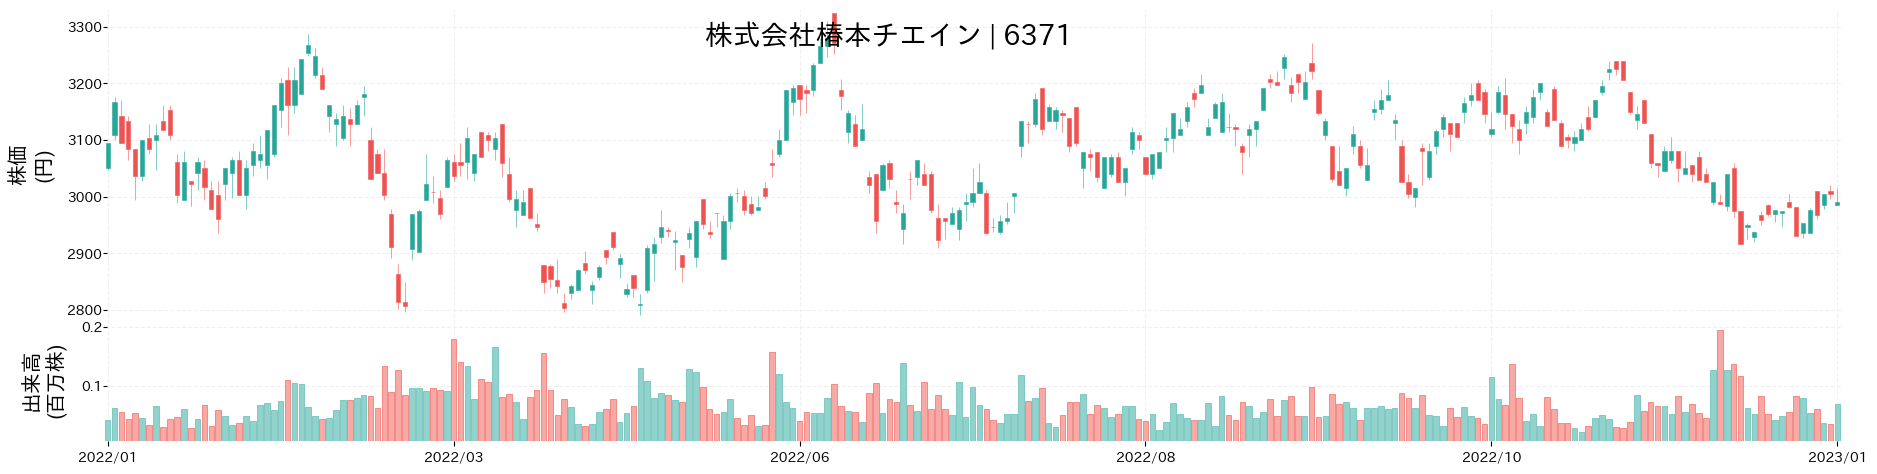 椿本チエインの株価推移(2022)